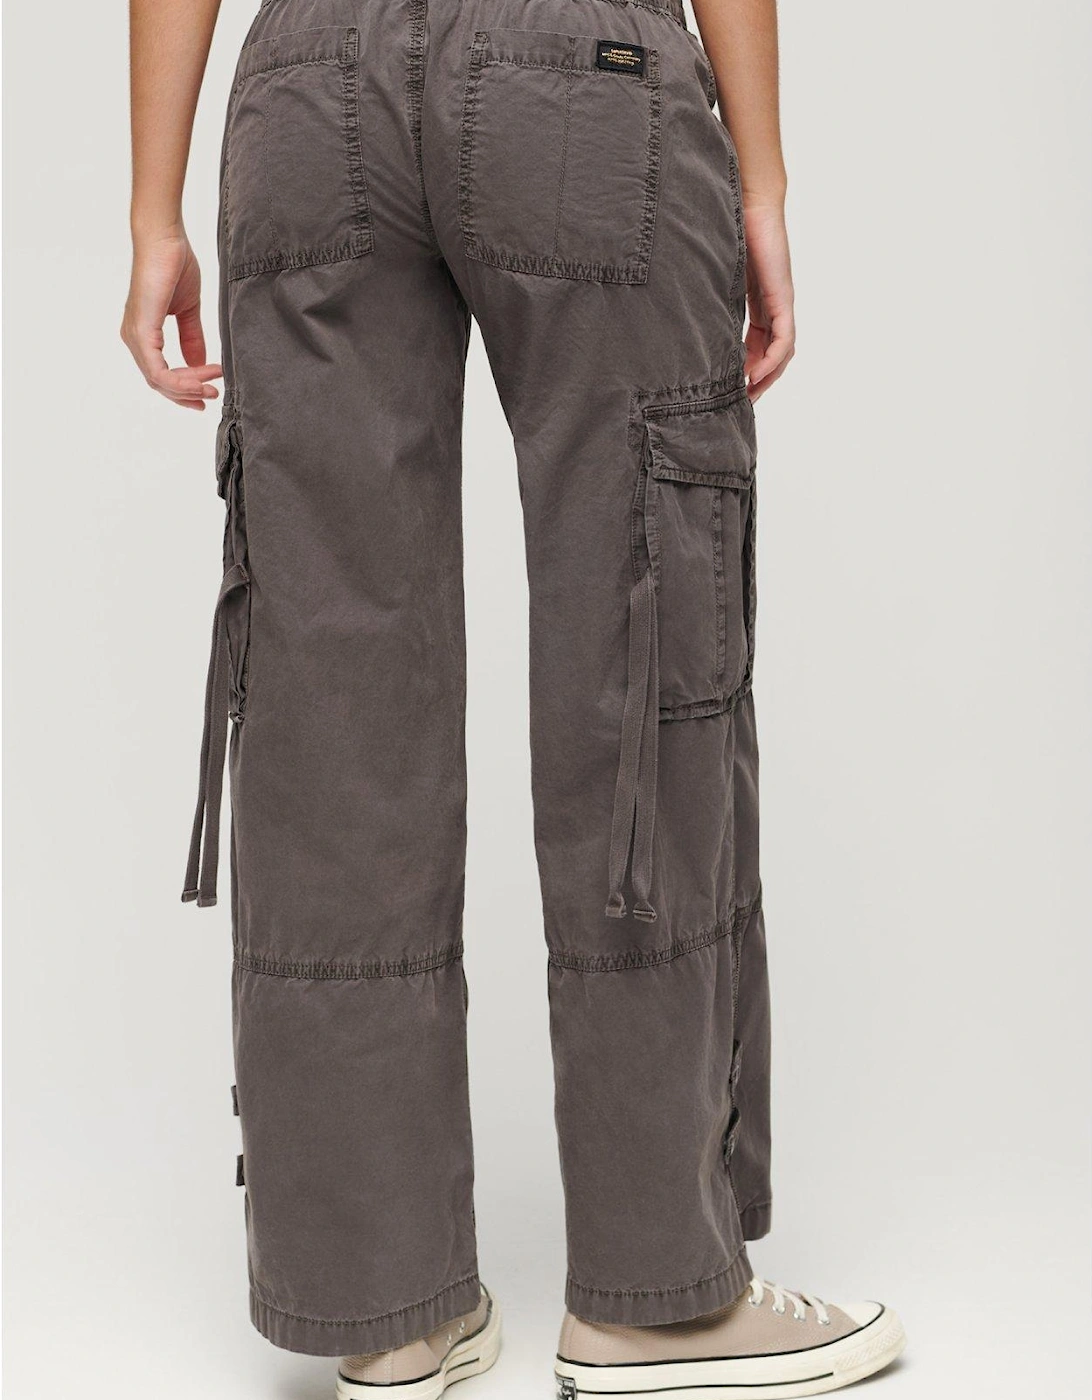 Vintage Low Rise Elastic Cargo Pants - Brown